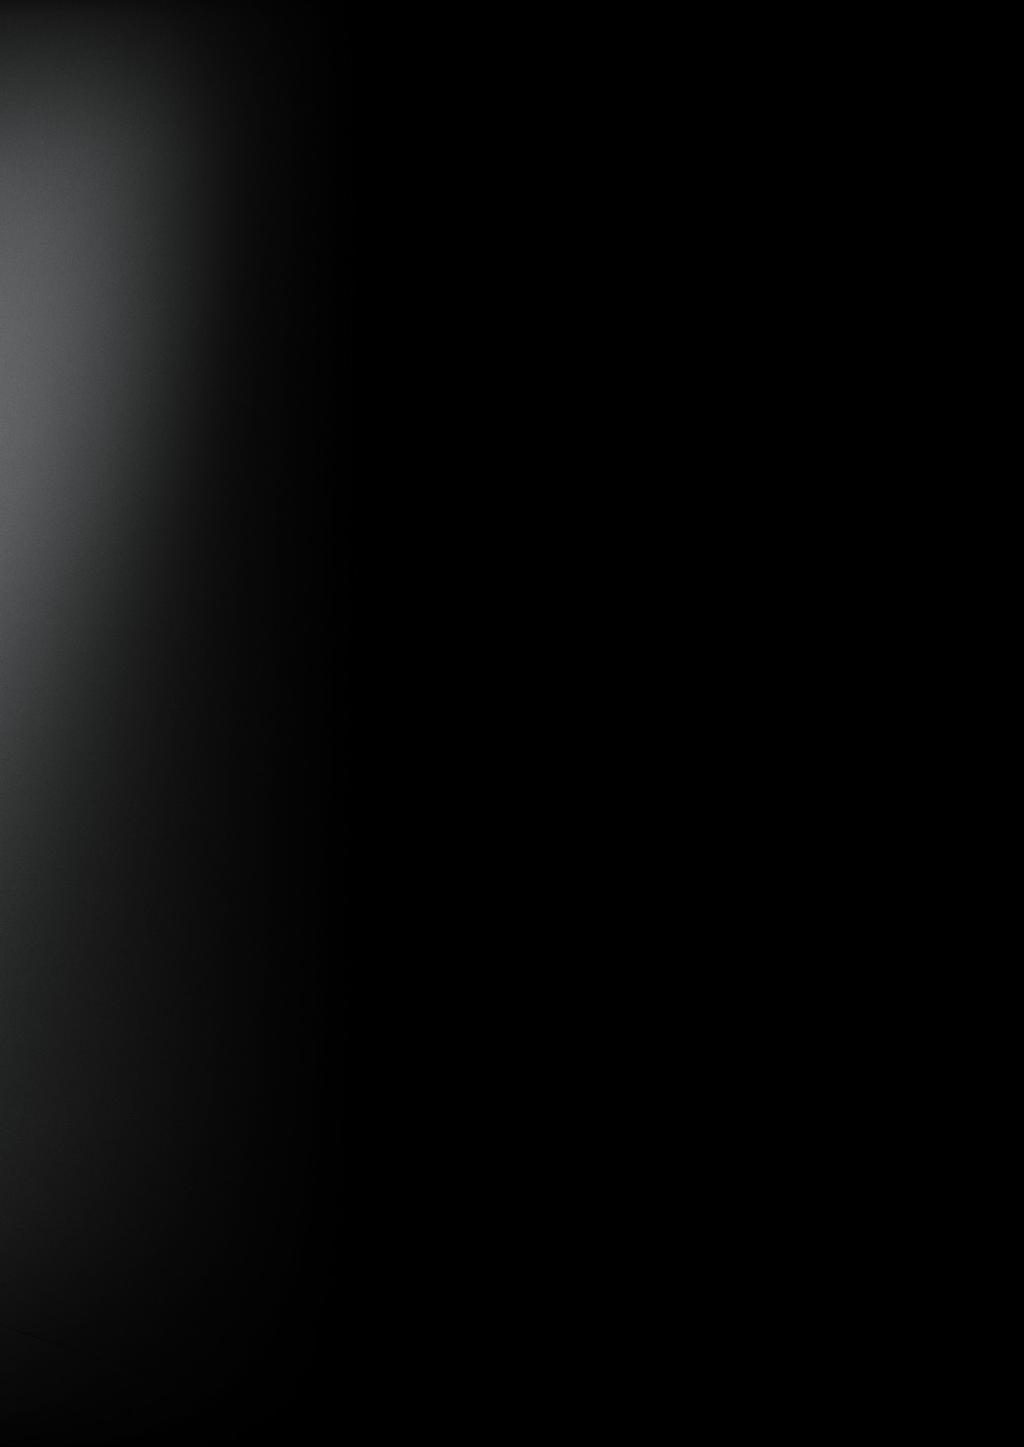 DANSANI DUSJ / DESIGNET RUNDT DEG BASE / Grunnleggende god kvalitet møter solid funksjonalitet DANSANI 6 mm sikkerhetsglass med EasyCare-behandling Funksjonell design med blanke profiler Bredt